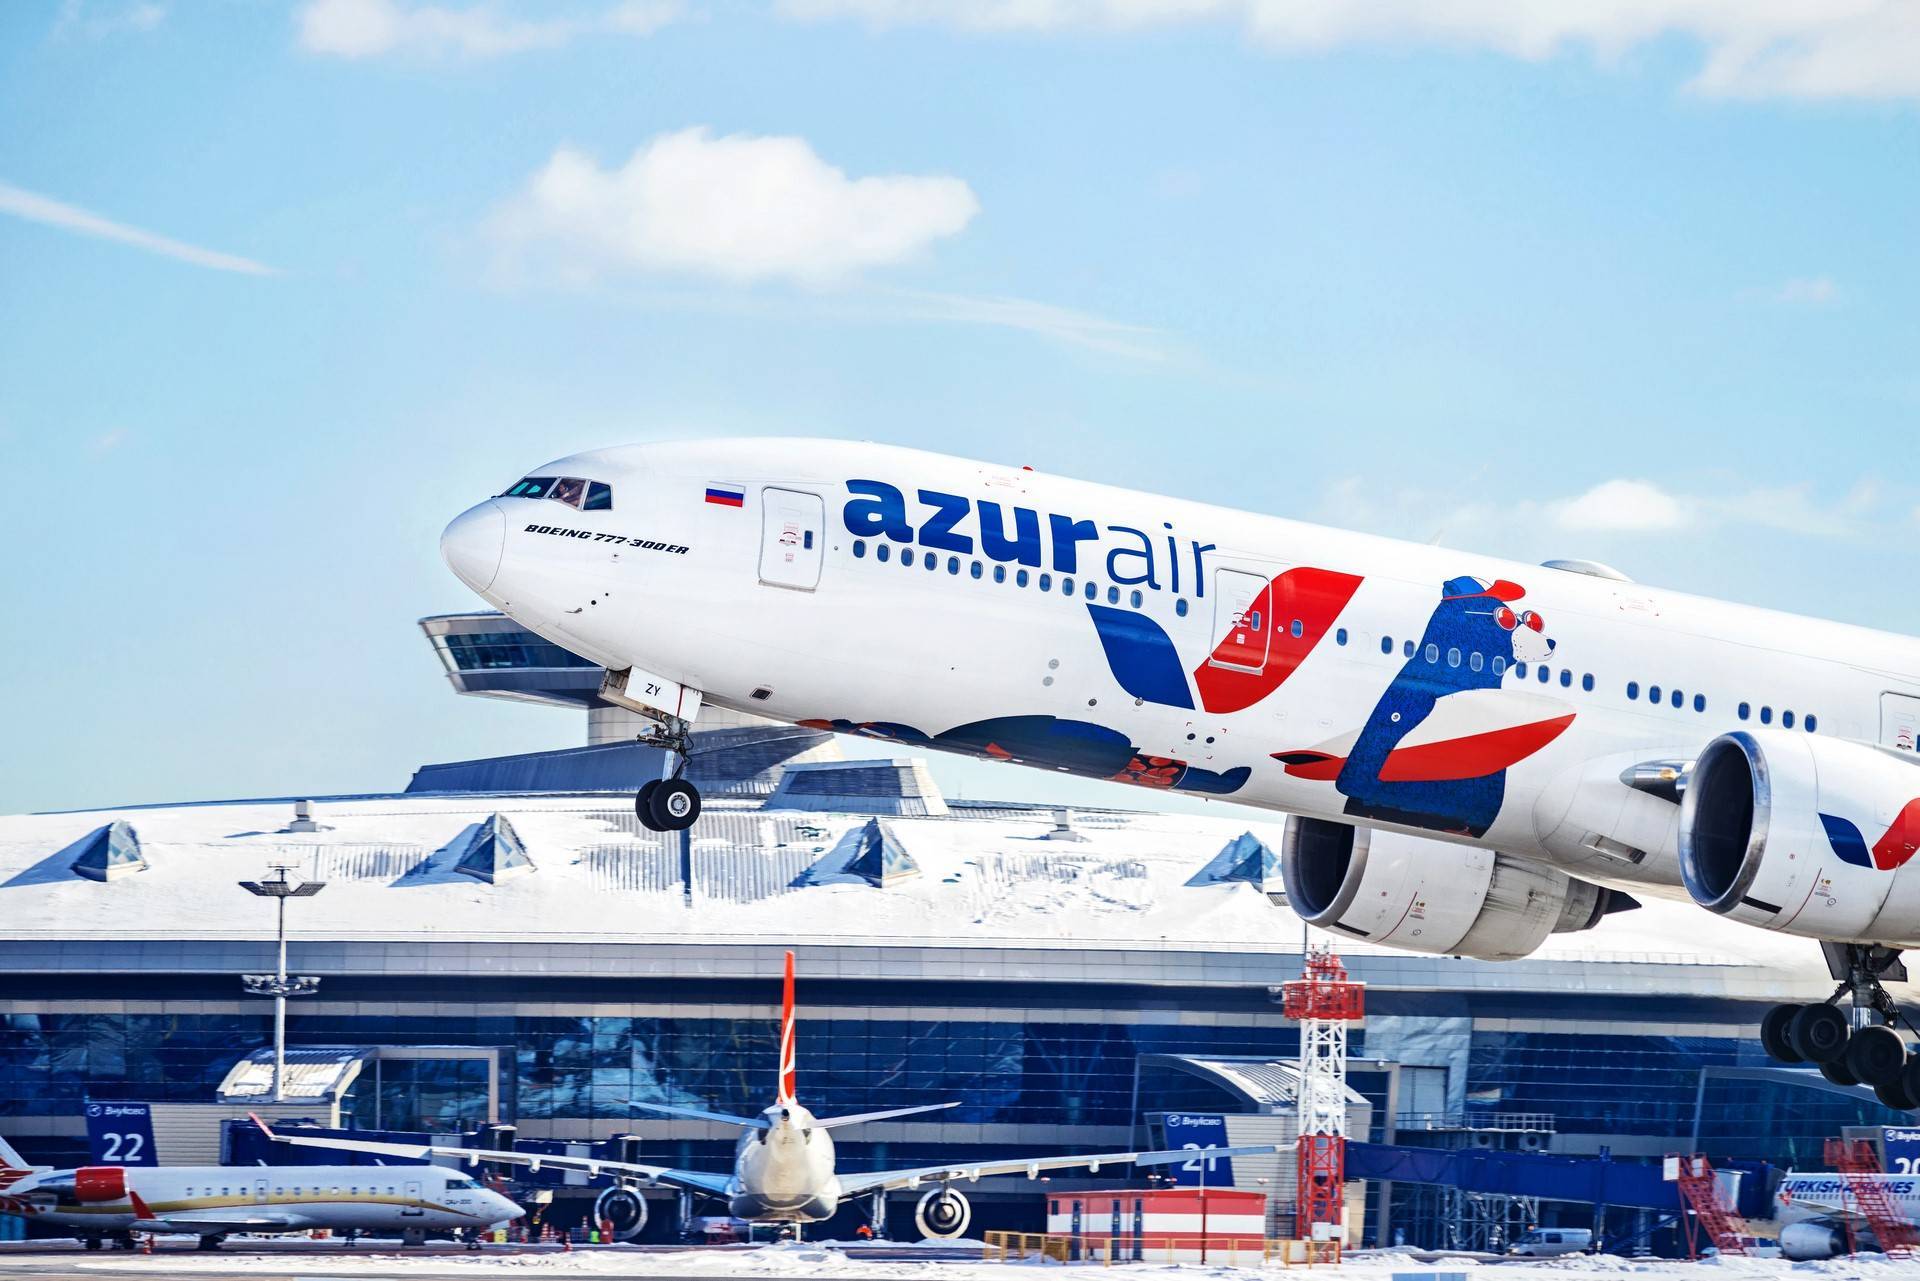 Авиакомпания azur air — все аварии и катастрофы — советы авиатуристам